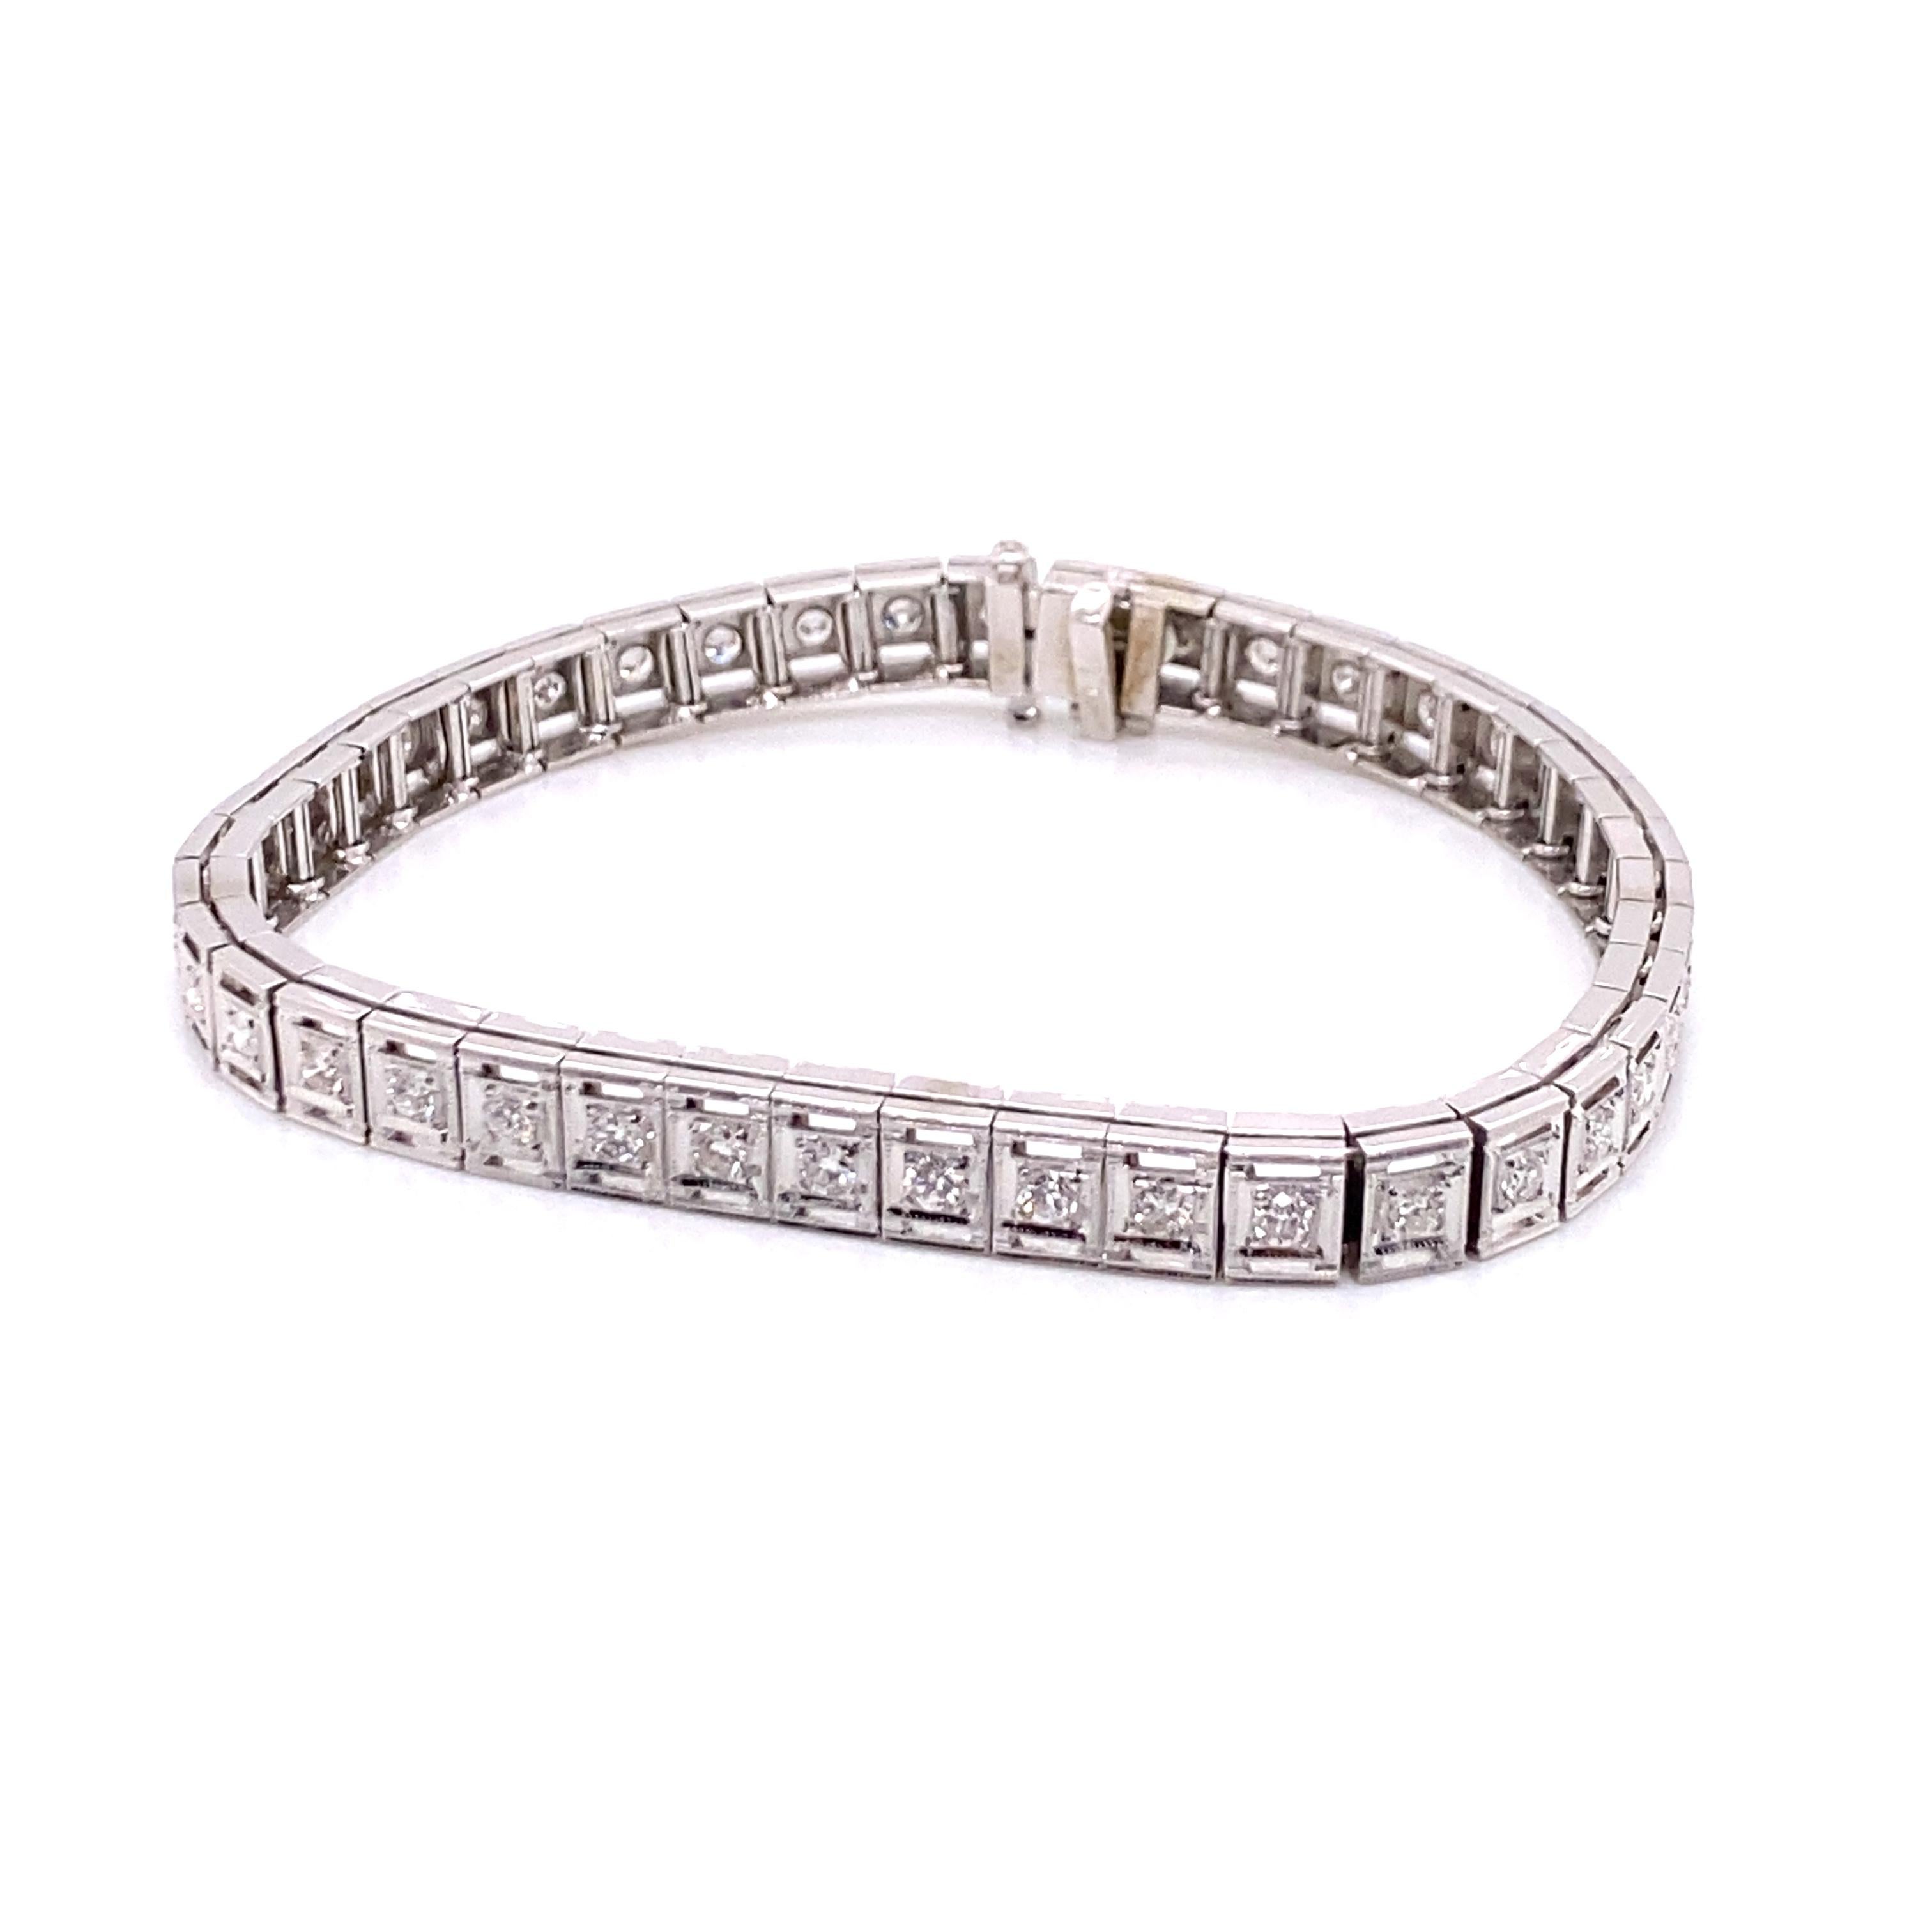 Vintage 1950's 14K White Gold Diamond Tennis Bracelet 1,26ct - Die Linie Box-Stil Armband enthält 42 runde Diamanten mit einem Gewicht von etwa 1,26ct mit G - H Farbe und SI Klarheit. Das Armband misst 6,75 cm lang und 0,25 cm breit und verfügt über